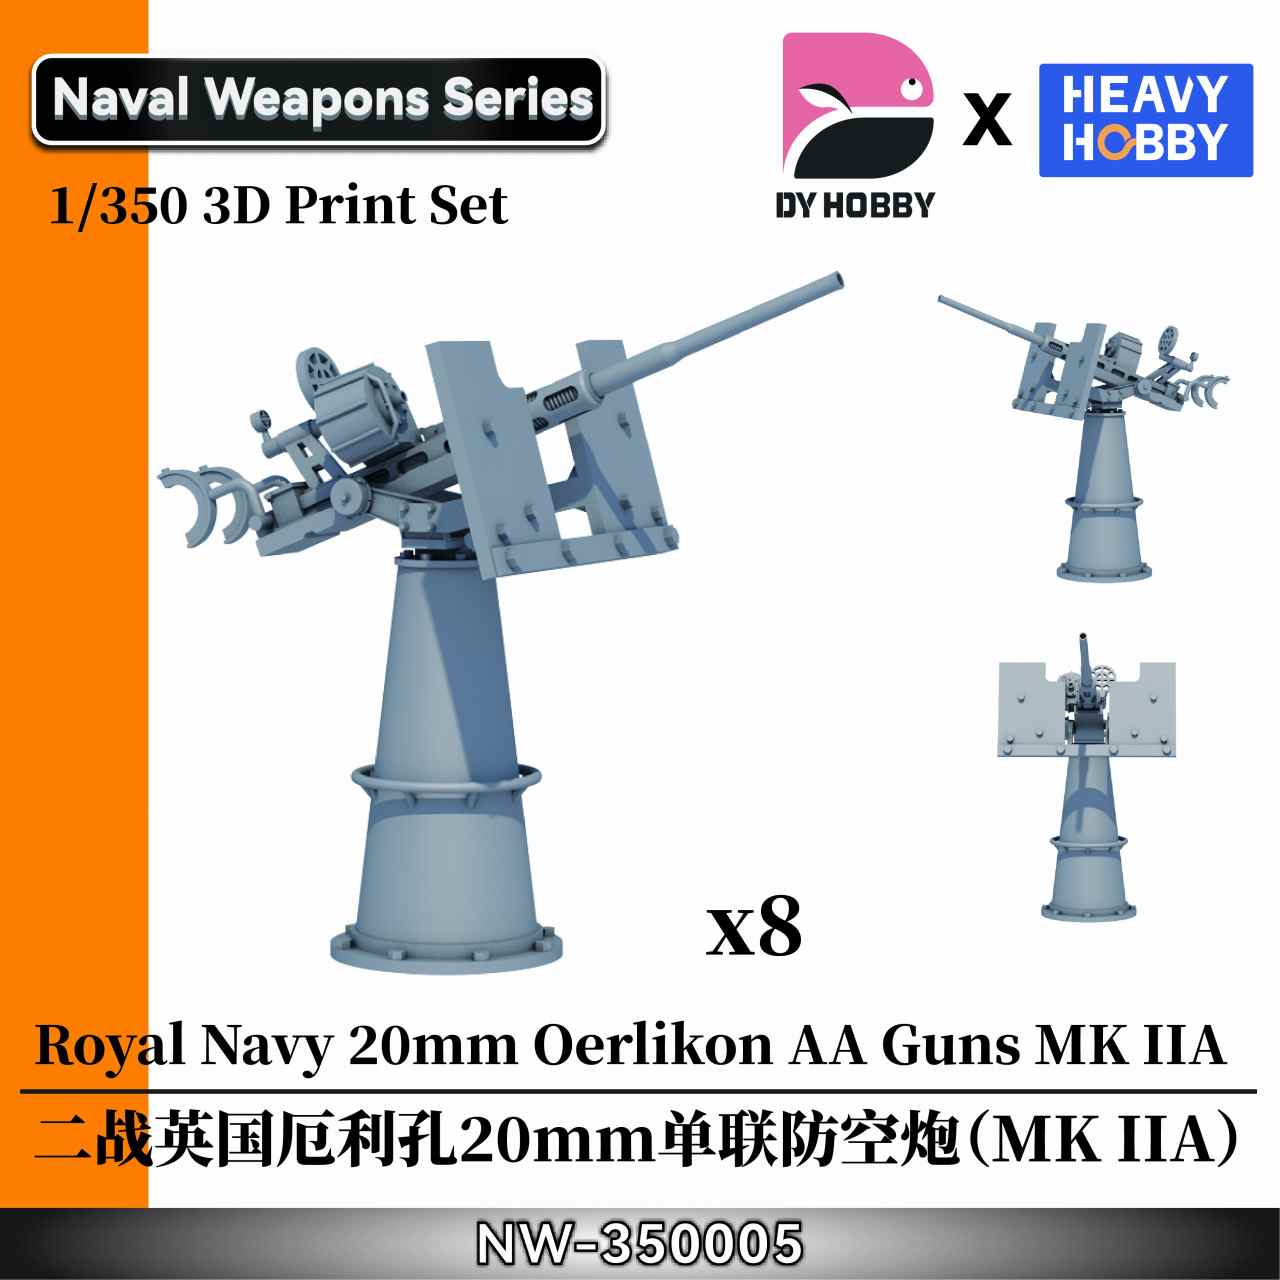 【新製品】NW-350005 1/350 WWII イギリス海軍 エリコン 20mm 単装機関砲 (MK IIA)